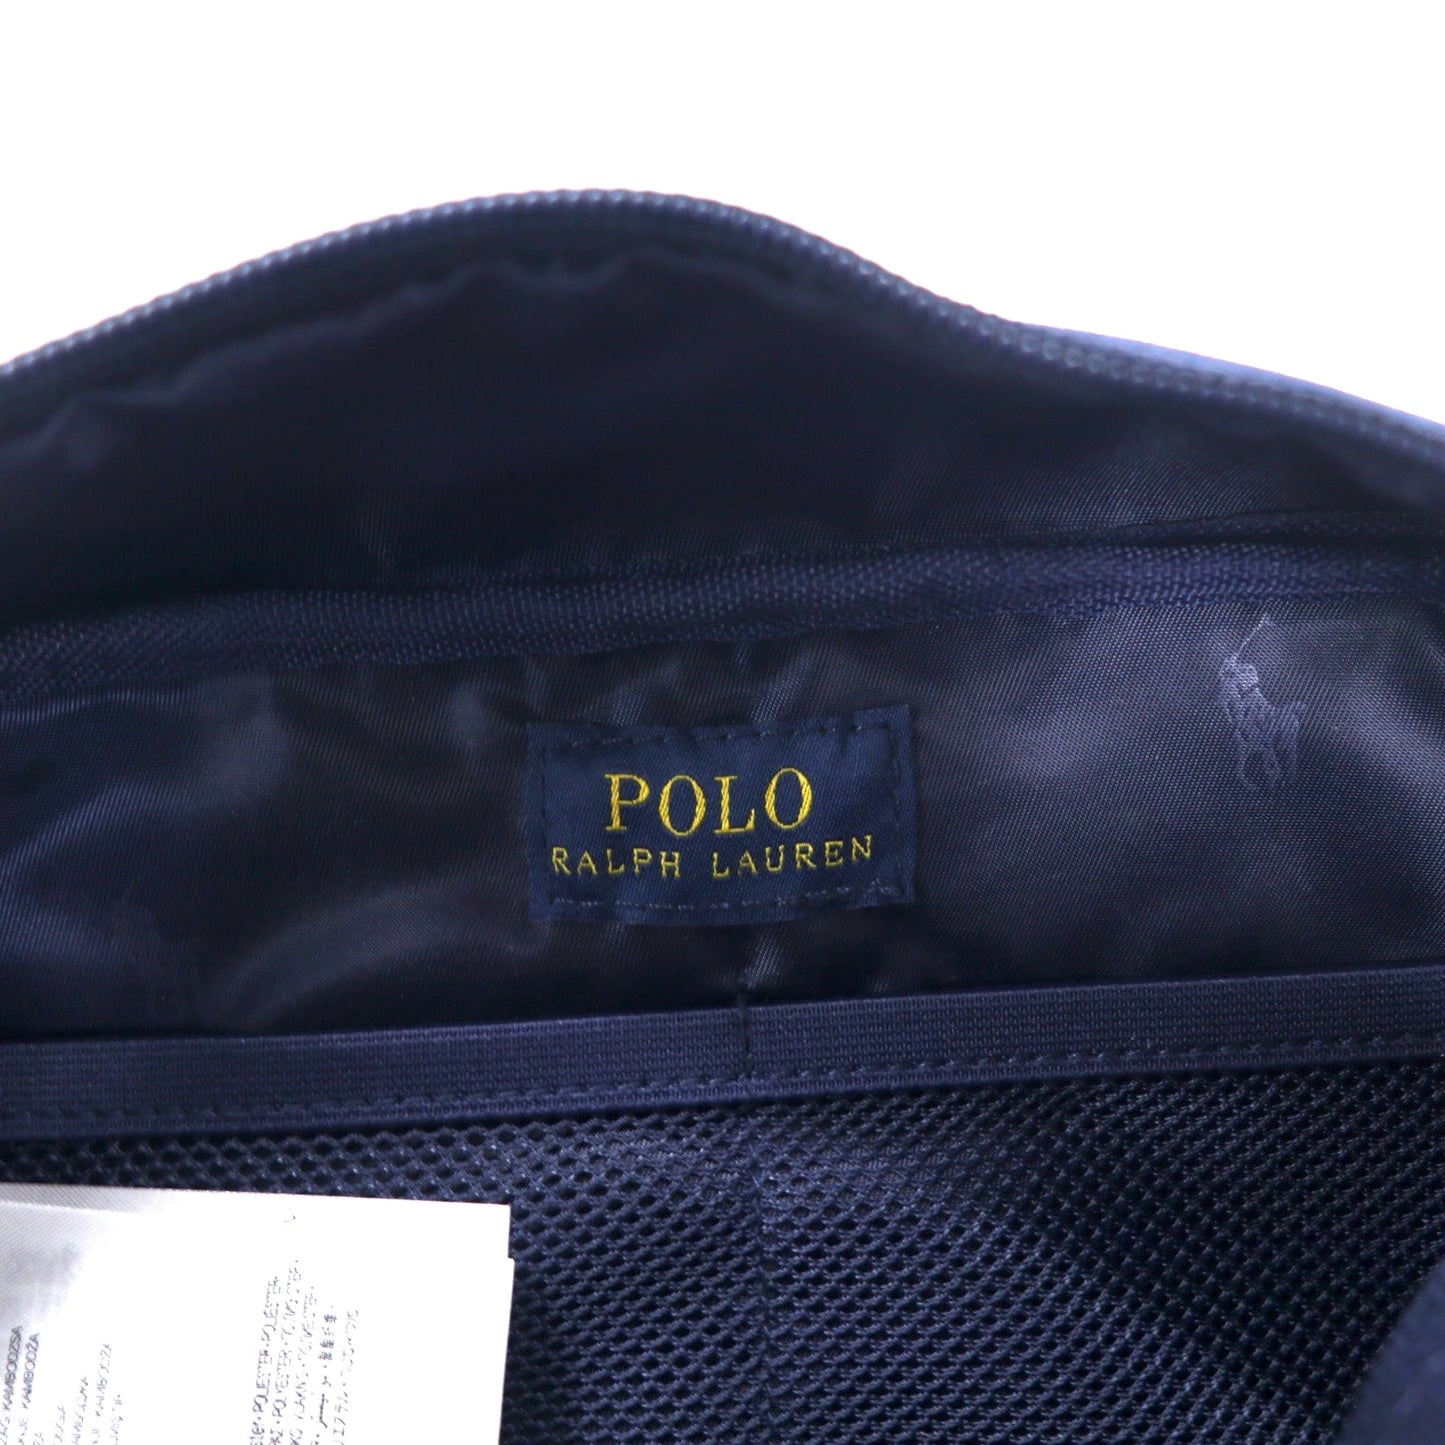 POLO RALPH LAUREN ポニー刺繍 ポーチ セカンドバッグ ネイビー ナイロン 未使用品